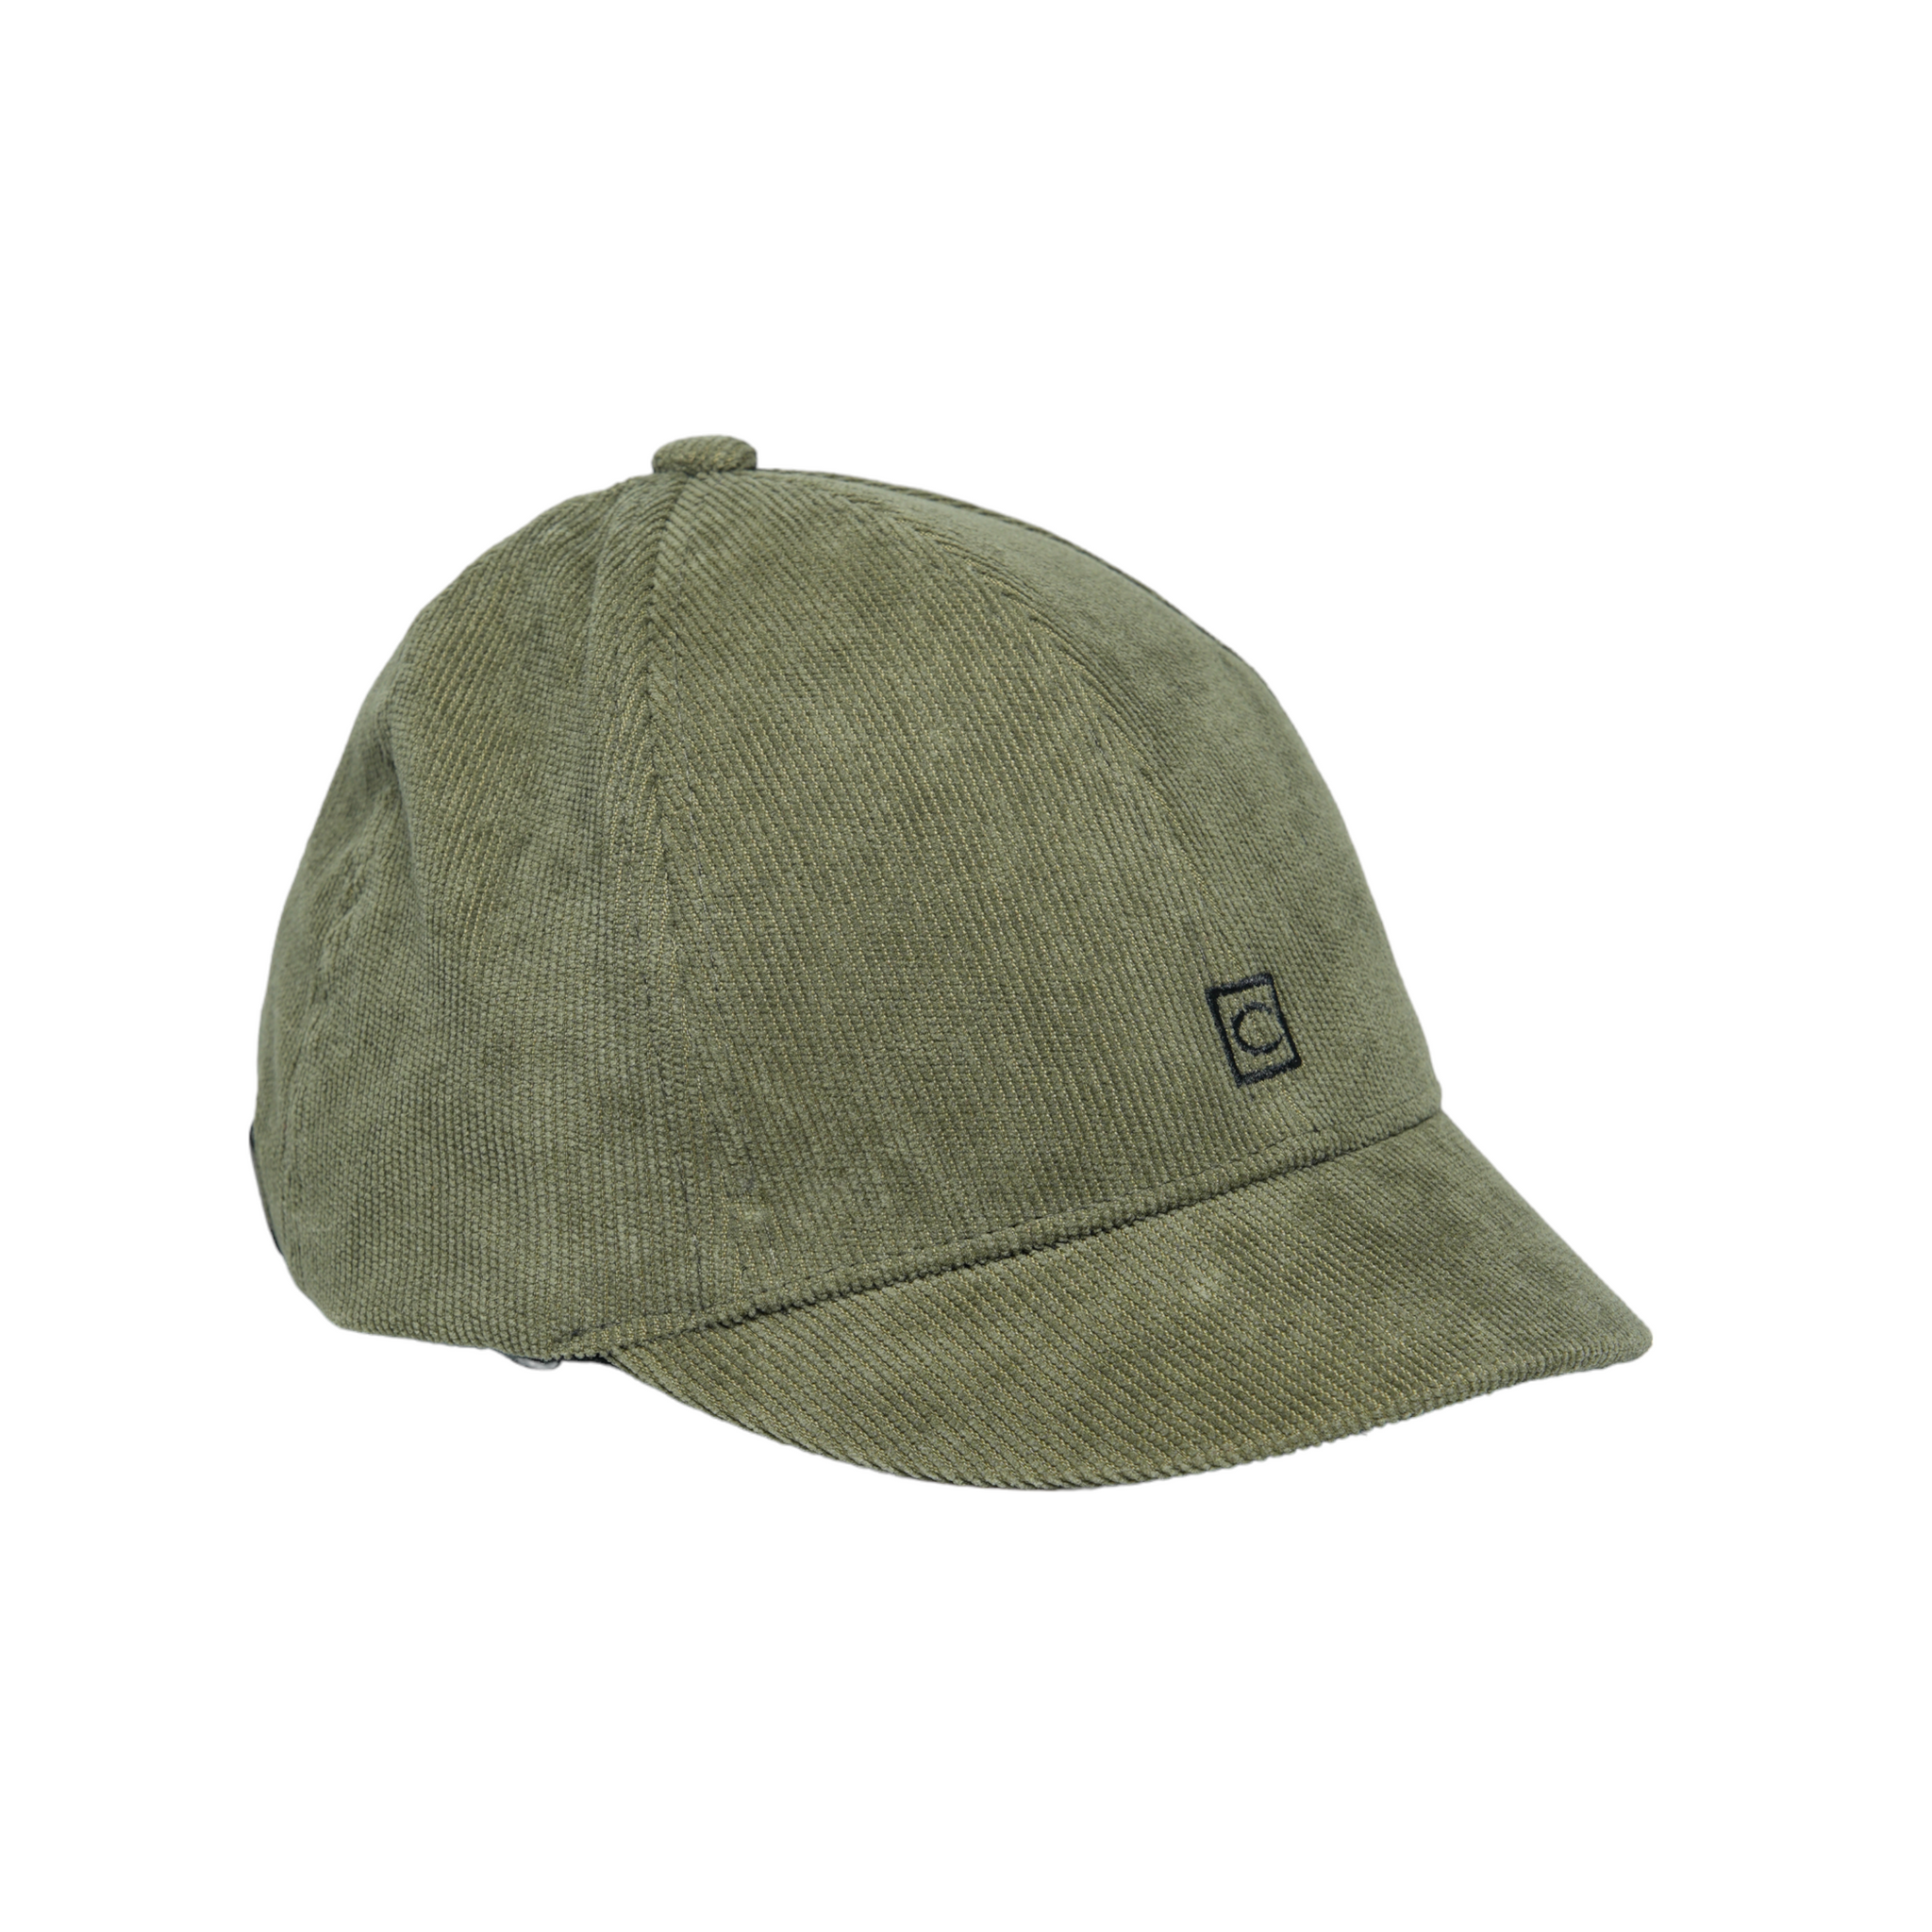 Chokore Short Brim Autumn Baseball Cap (Army Green)